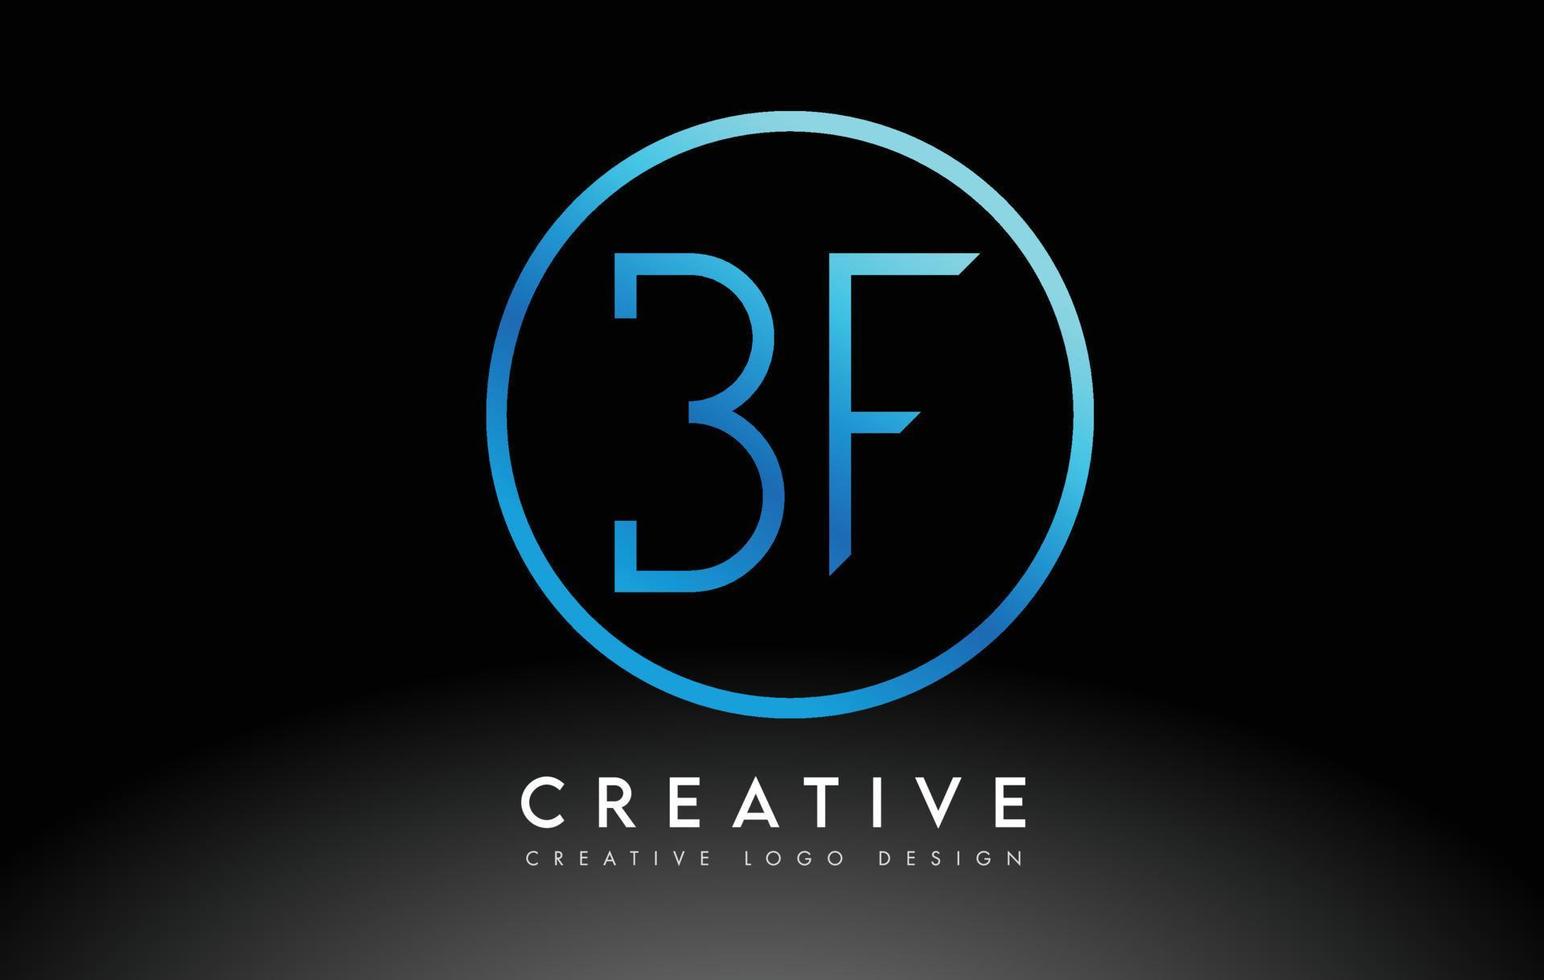 diseño de logotipo de letras bf azul neón delgado. concepto creativo simple carta limpia. vector